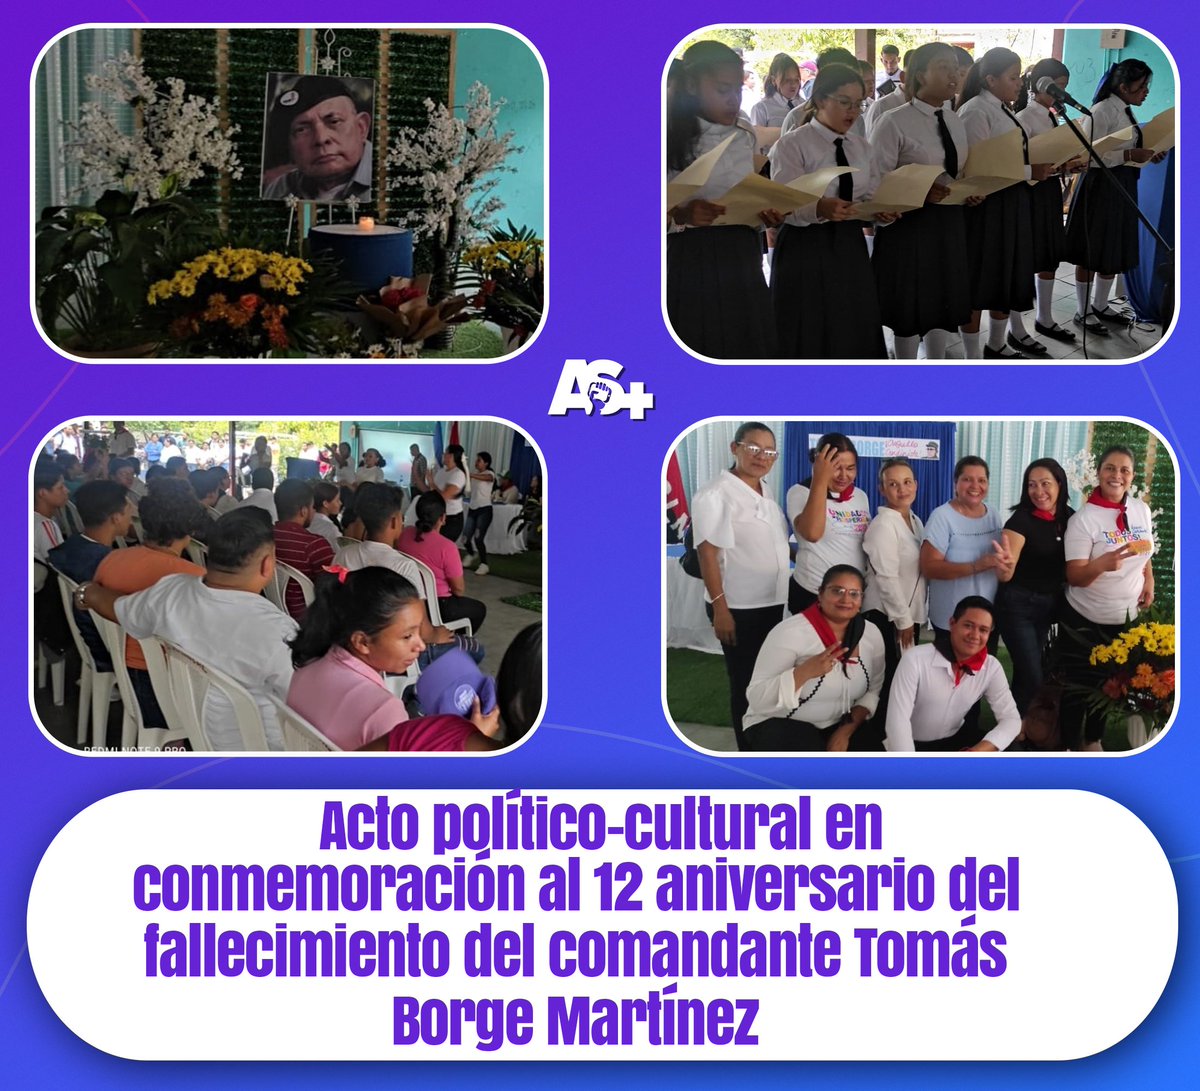 El pasado 30 de Abril se llevó a cabo un acto político-cultural en conmemoración al 12 aniversario del fallecimiento del comandante Tomás Borge Martínez, con la participación de la militancia y autoridades del municipio de #Ocotal. #AdelanteSiempre #SoberaníayDignidadNacional